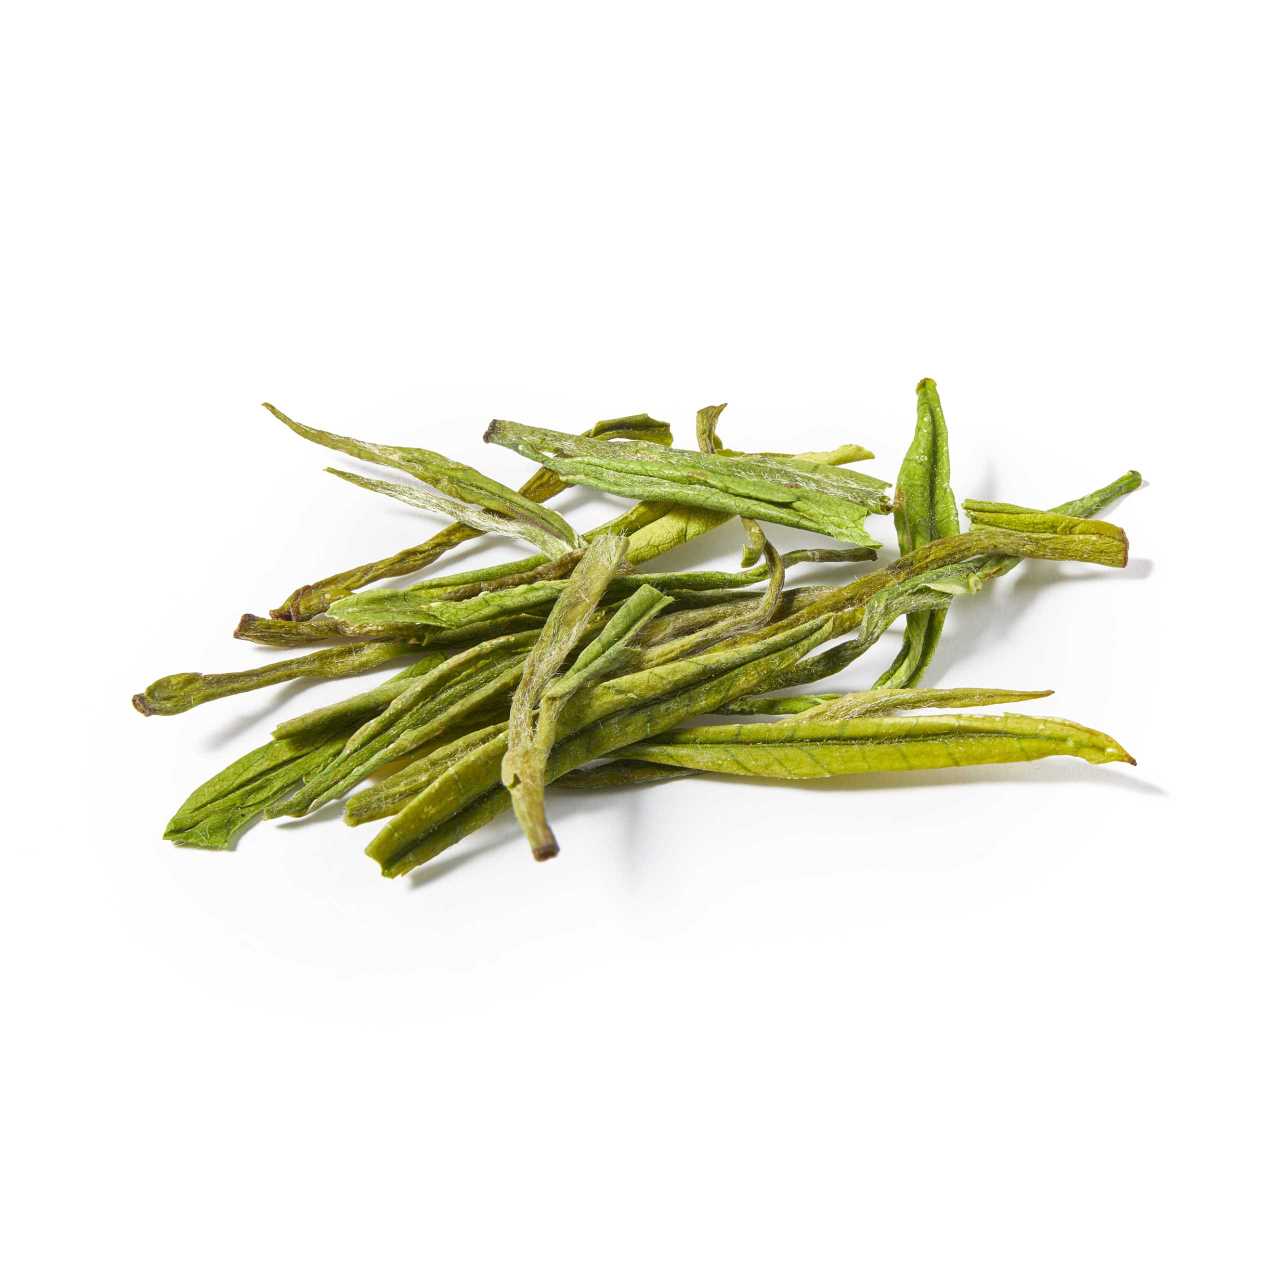 A macro image of Anji Bai cha Green Tea leaves